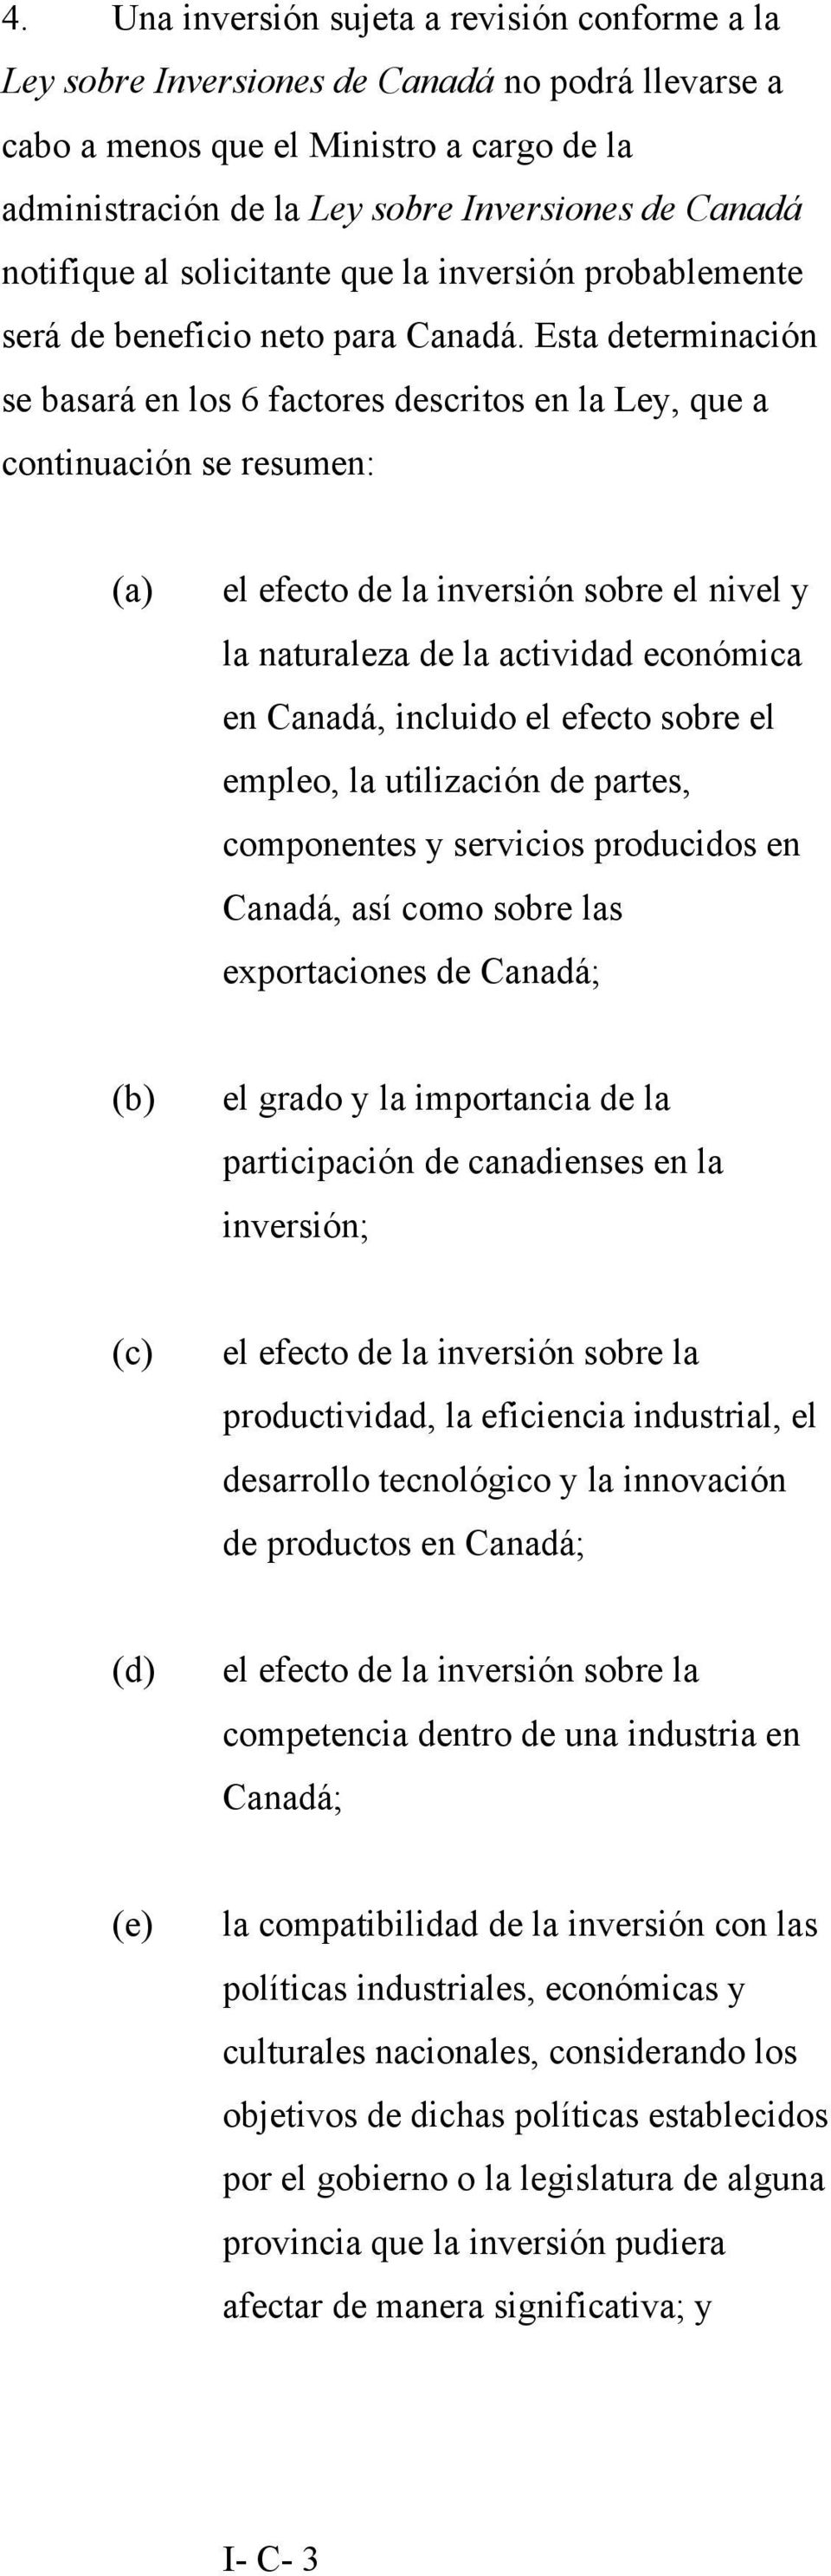 Esta determinación se basará en los 6 factores descritos en la Ley, que a continuación se resumen: (a) el efecto de la inversión sobre el nivel y la naturaleza de la actividad económica en Canadá,